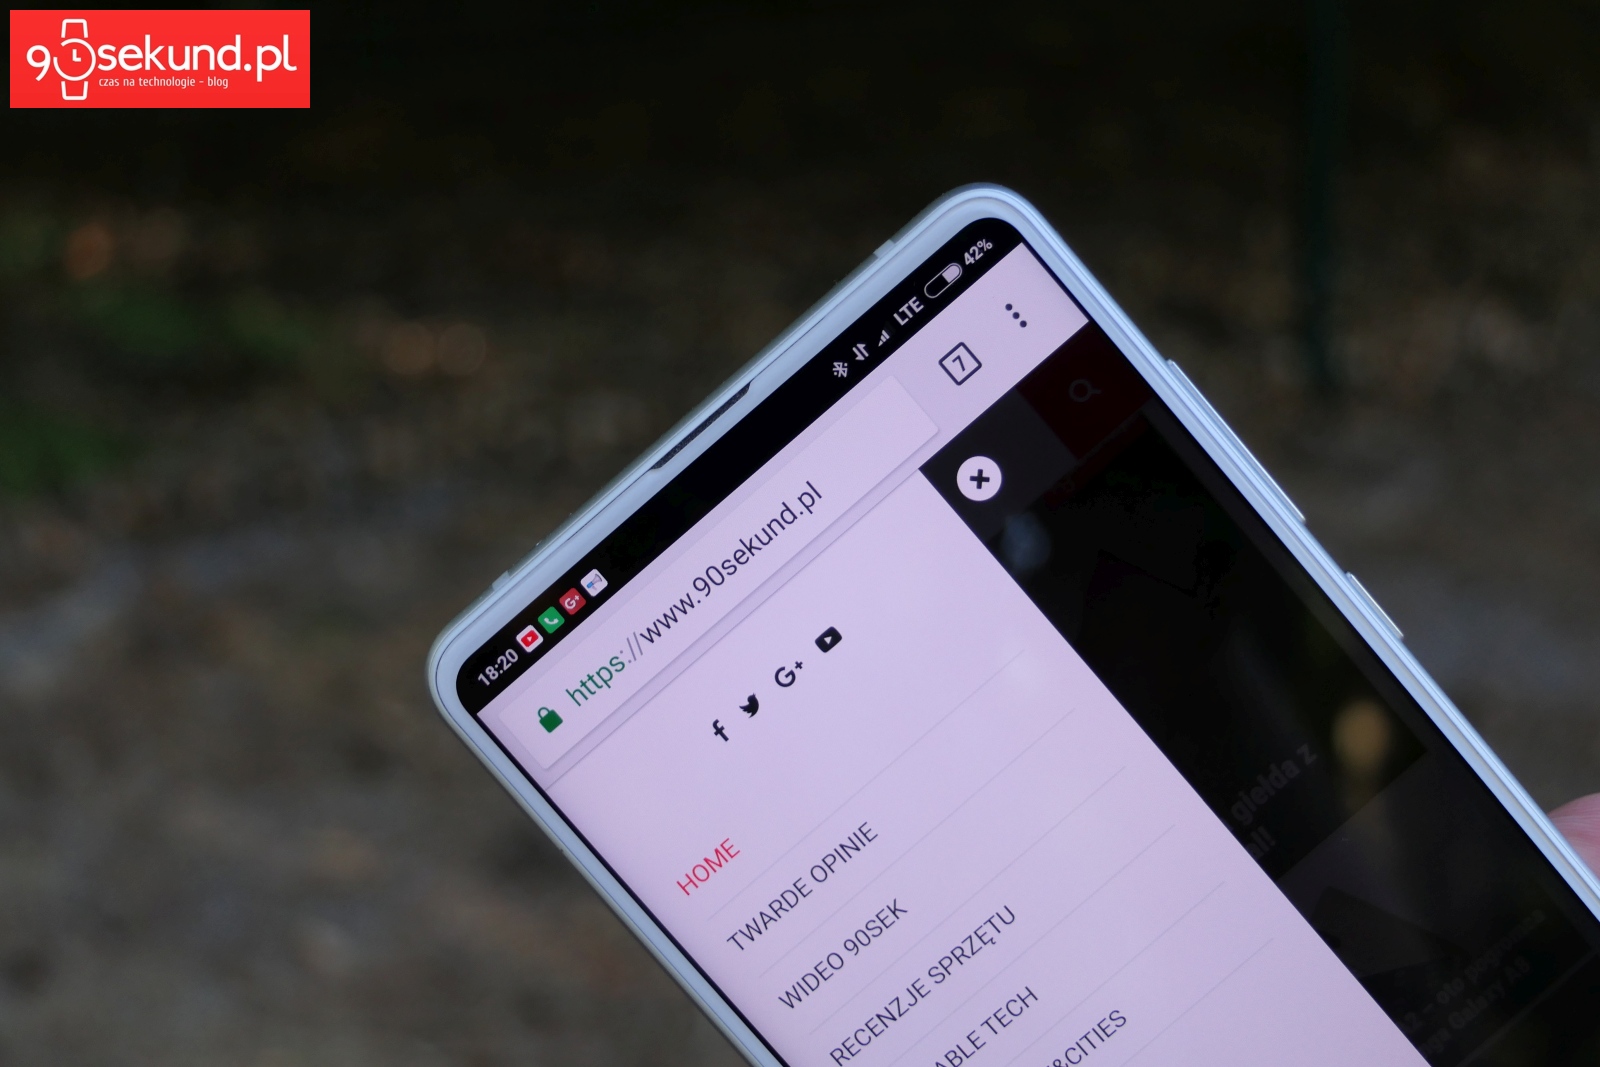 Recenzja Xiaomi Mi Mix 2s - 90sekund.pl / Michał Brożyński